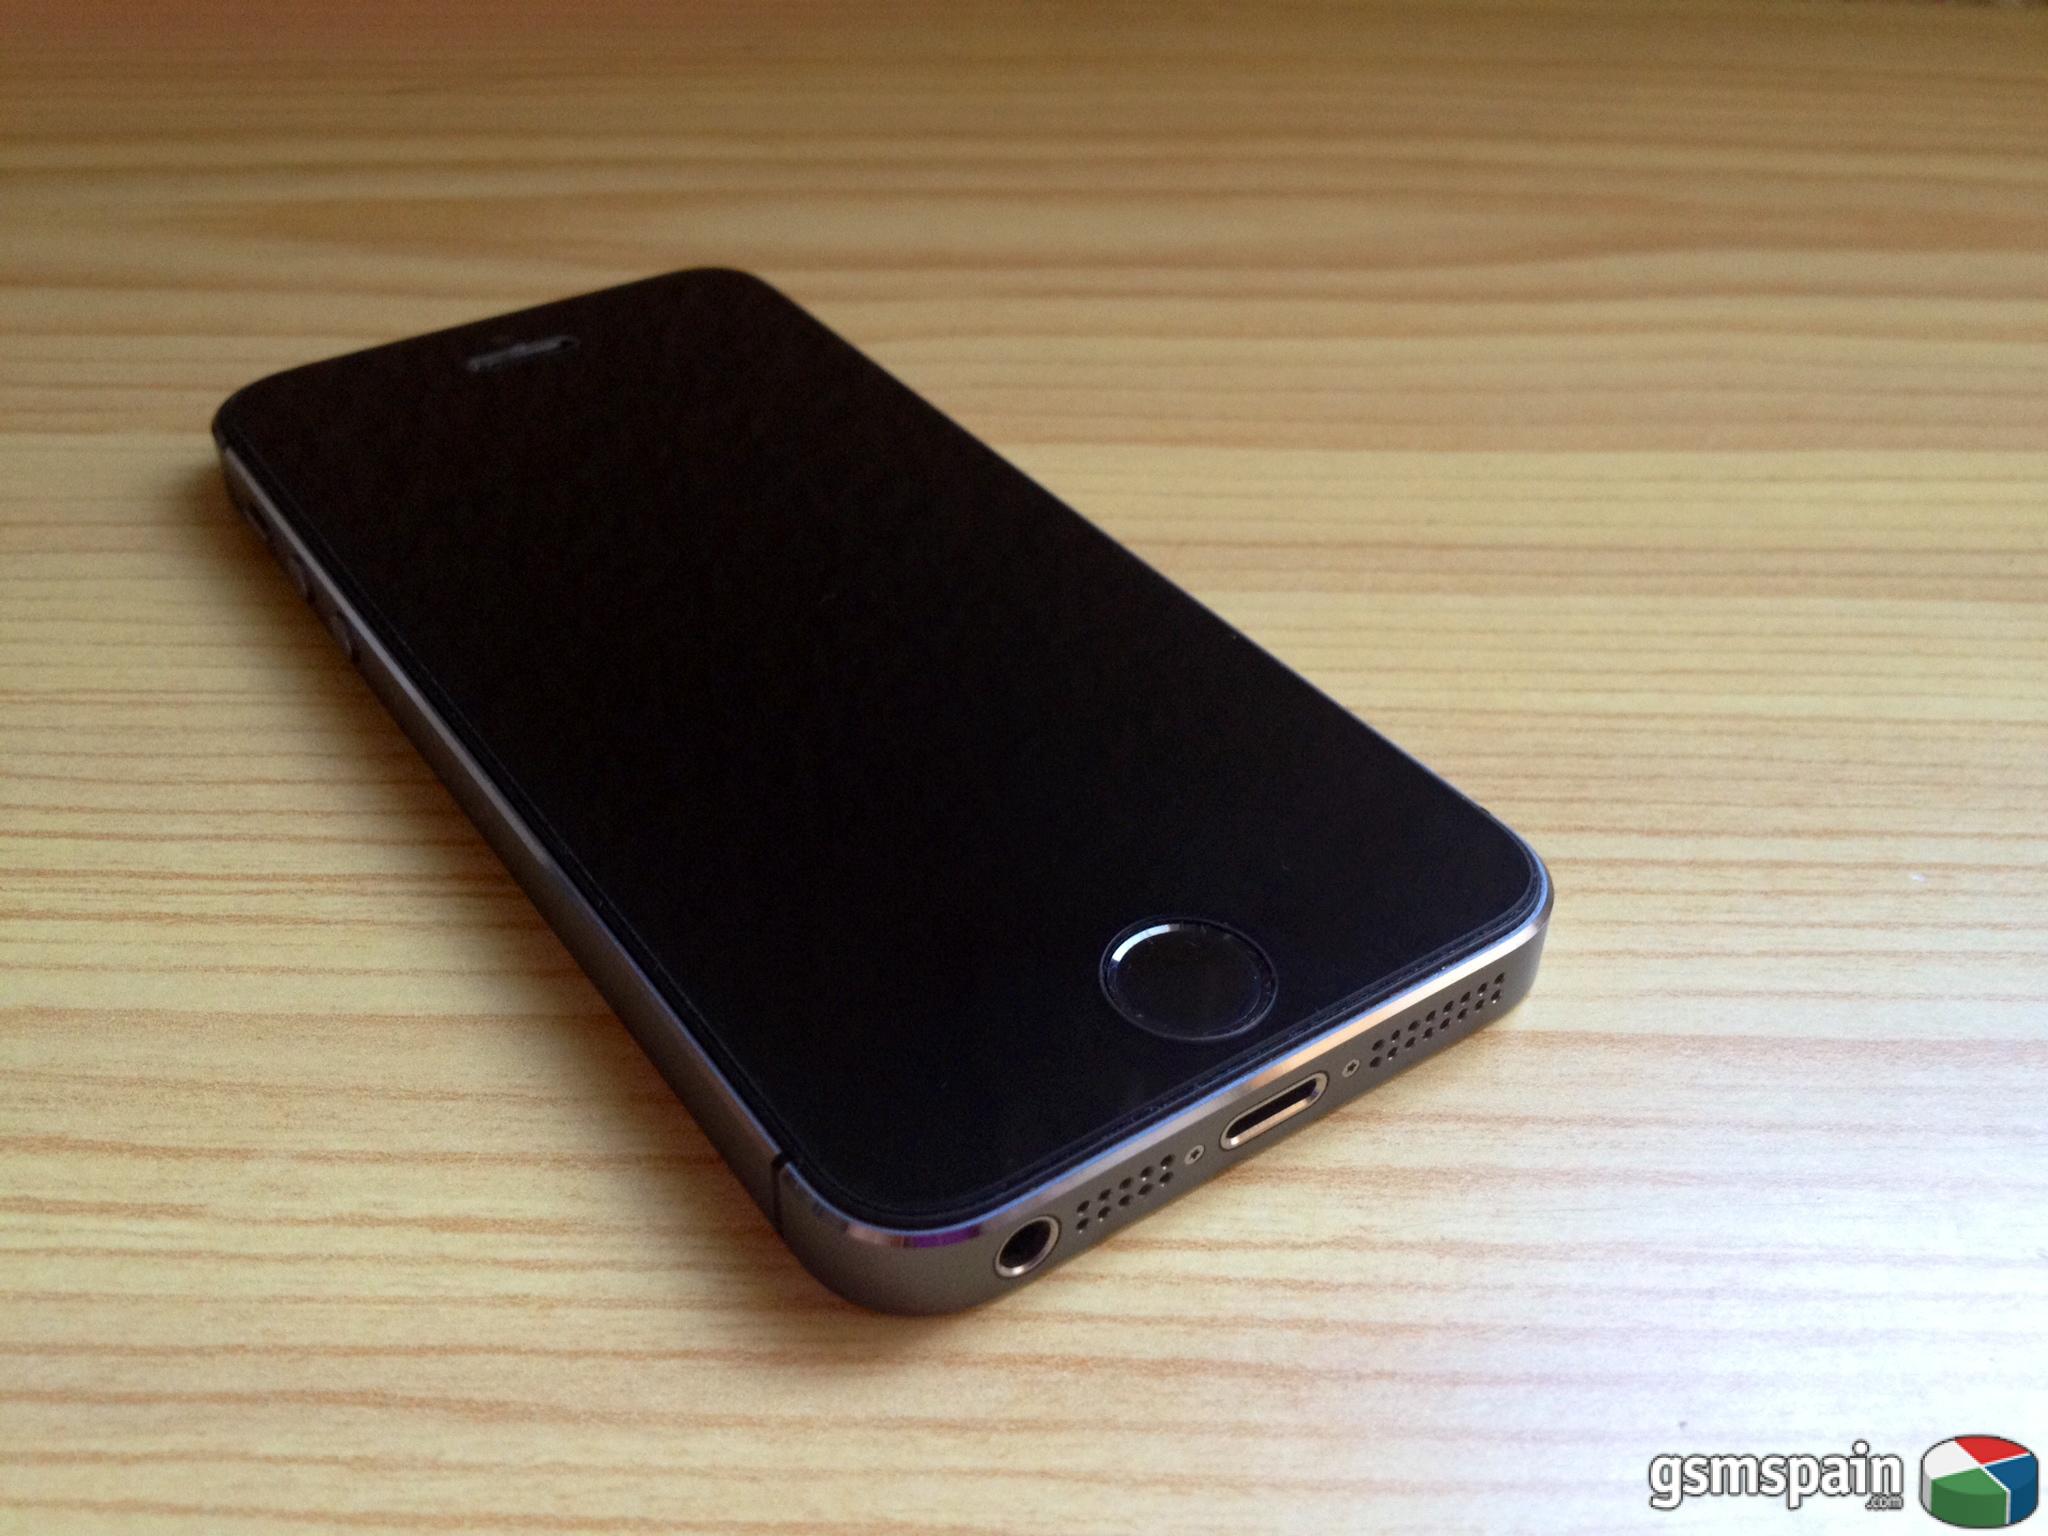 [VENDO] iPhone 5s 16Gb Space Gray libre factura garanta